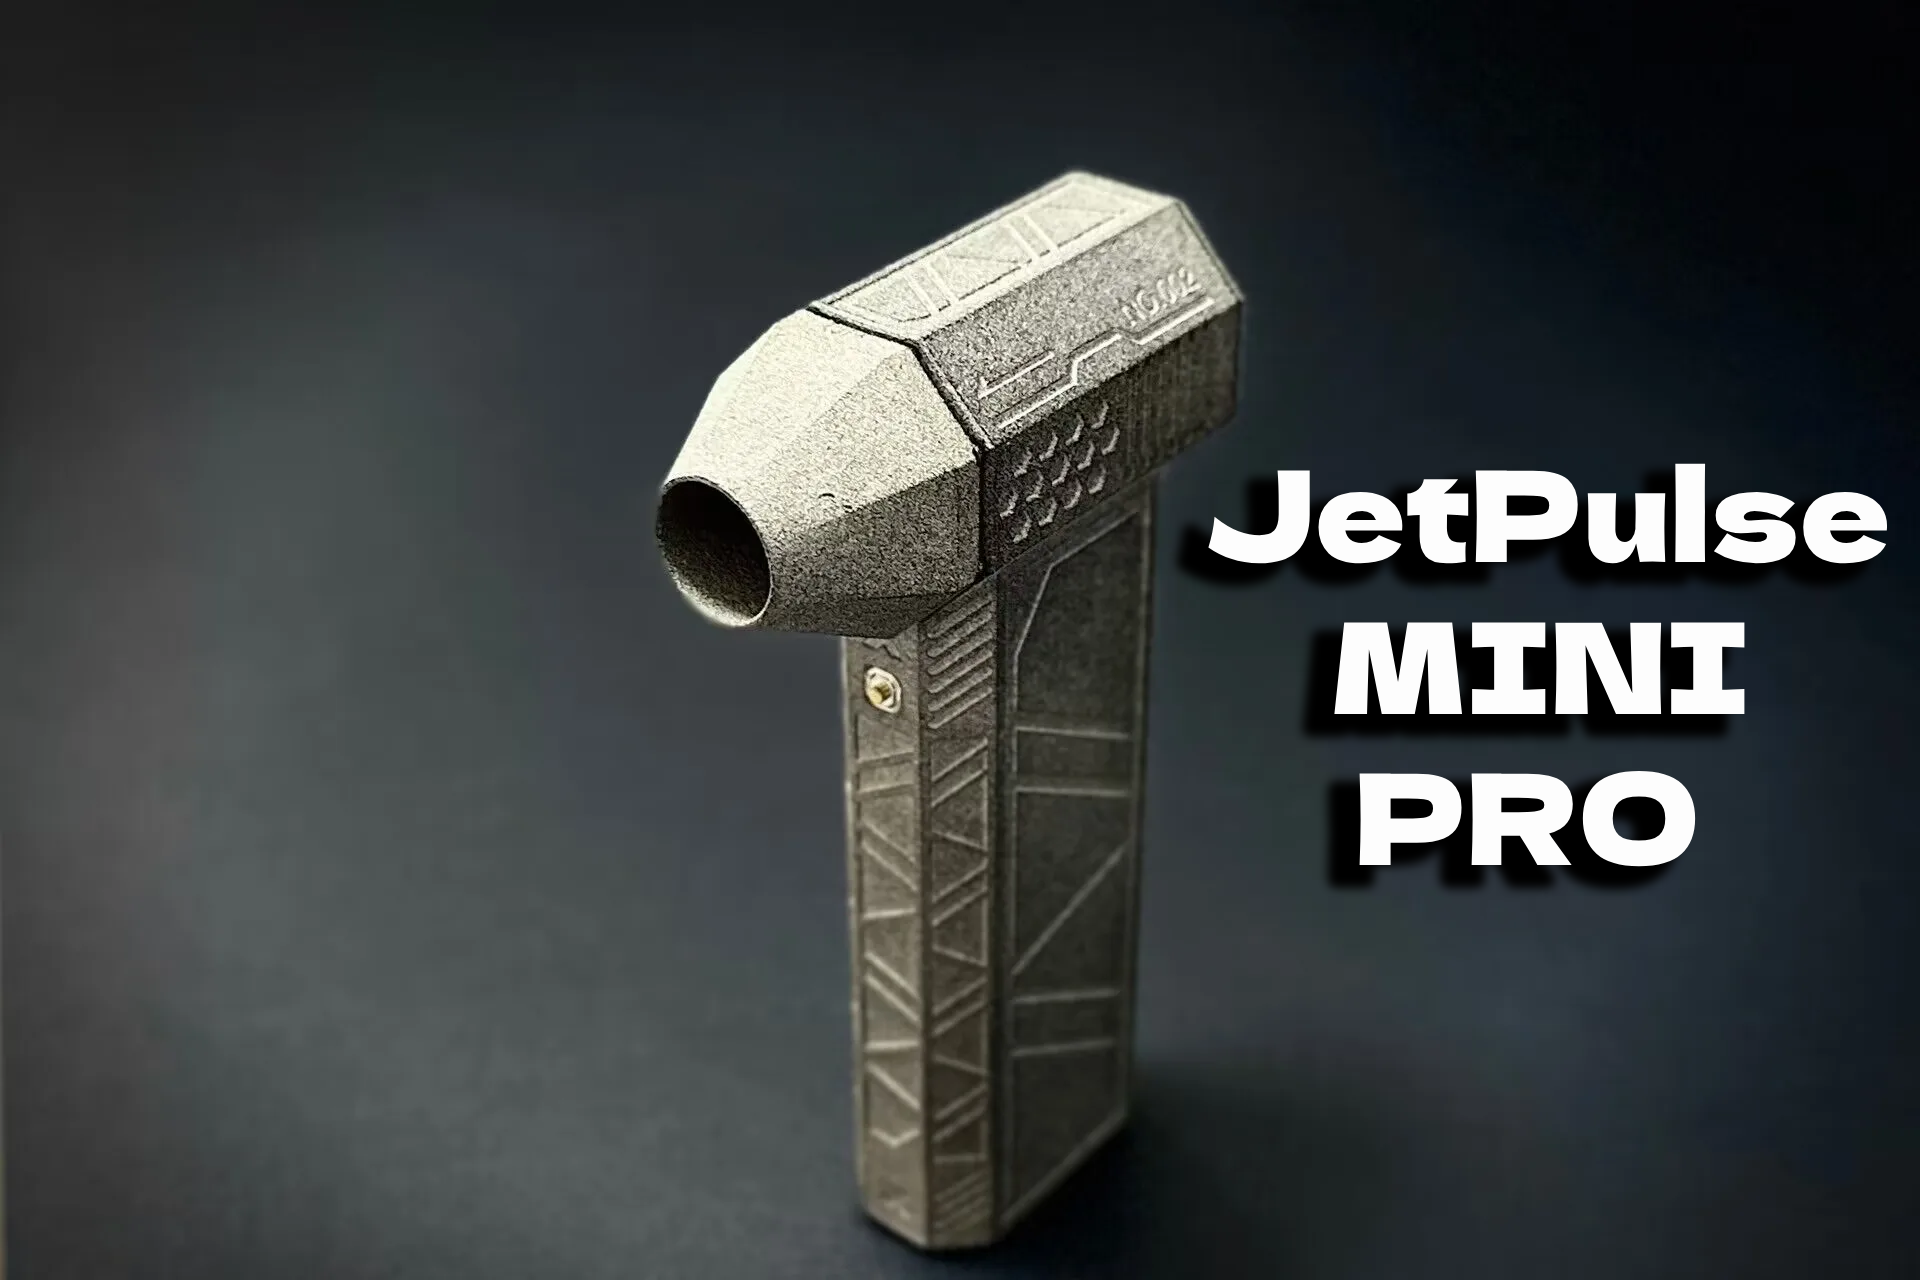 Jetpulse Mini pro